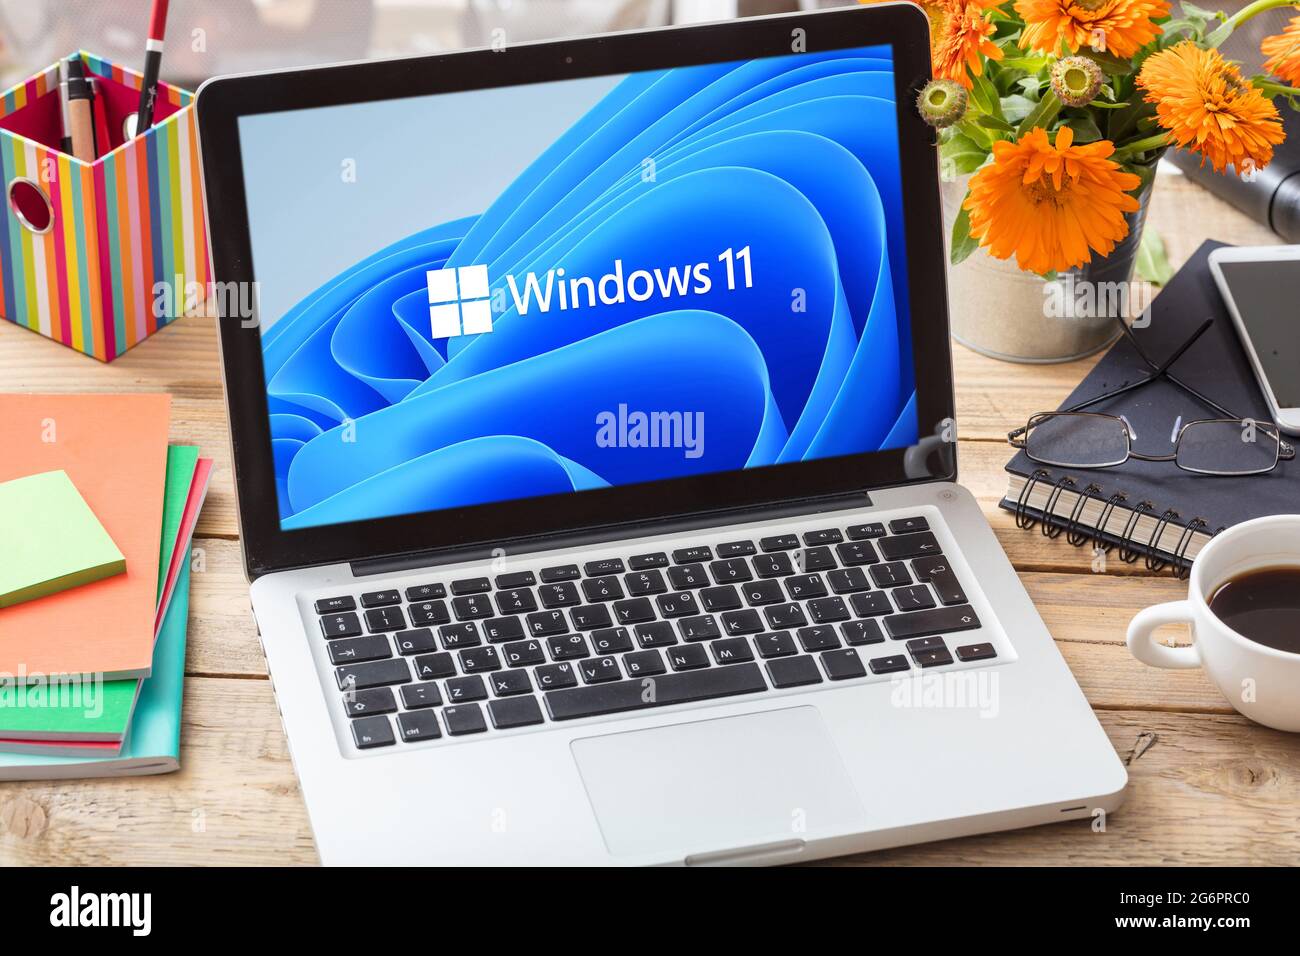 Grèce Athènes, juillet 8 2021. Affiche officielle Windows 11 sur l'écran d'ordinateur portable, table de bureau. Une version majeure de l'opération Windows NT Banque D'Images